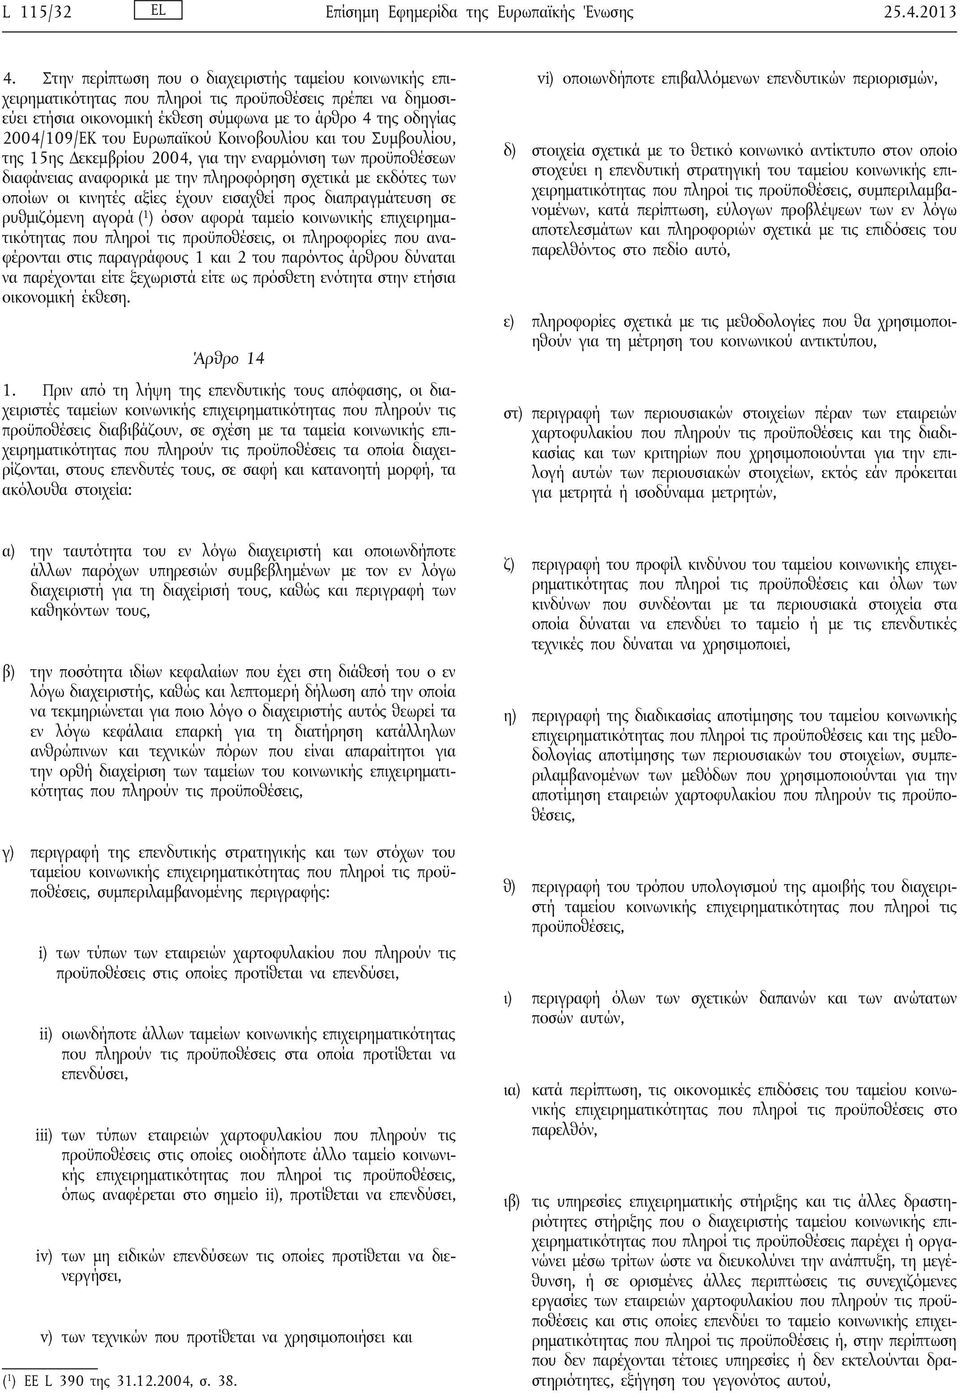 Ευρωπαϊκού Κοινοβουλίου και του Συμβουλίου, της 15ης Δεκεμβρίου 2004, για την εναρμόνιση των προϋποθέσεων διαφάνειας αναφορικά με την πληροφόρηση σχετικά με εκδότες των οποίων οι κινητές αξίες έχουν